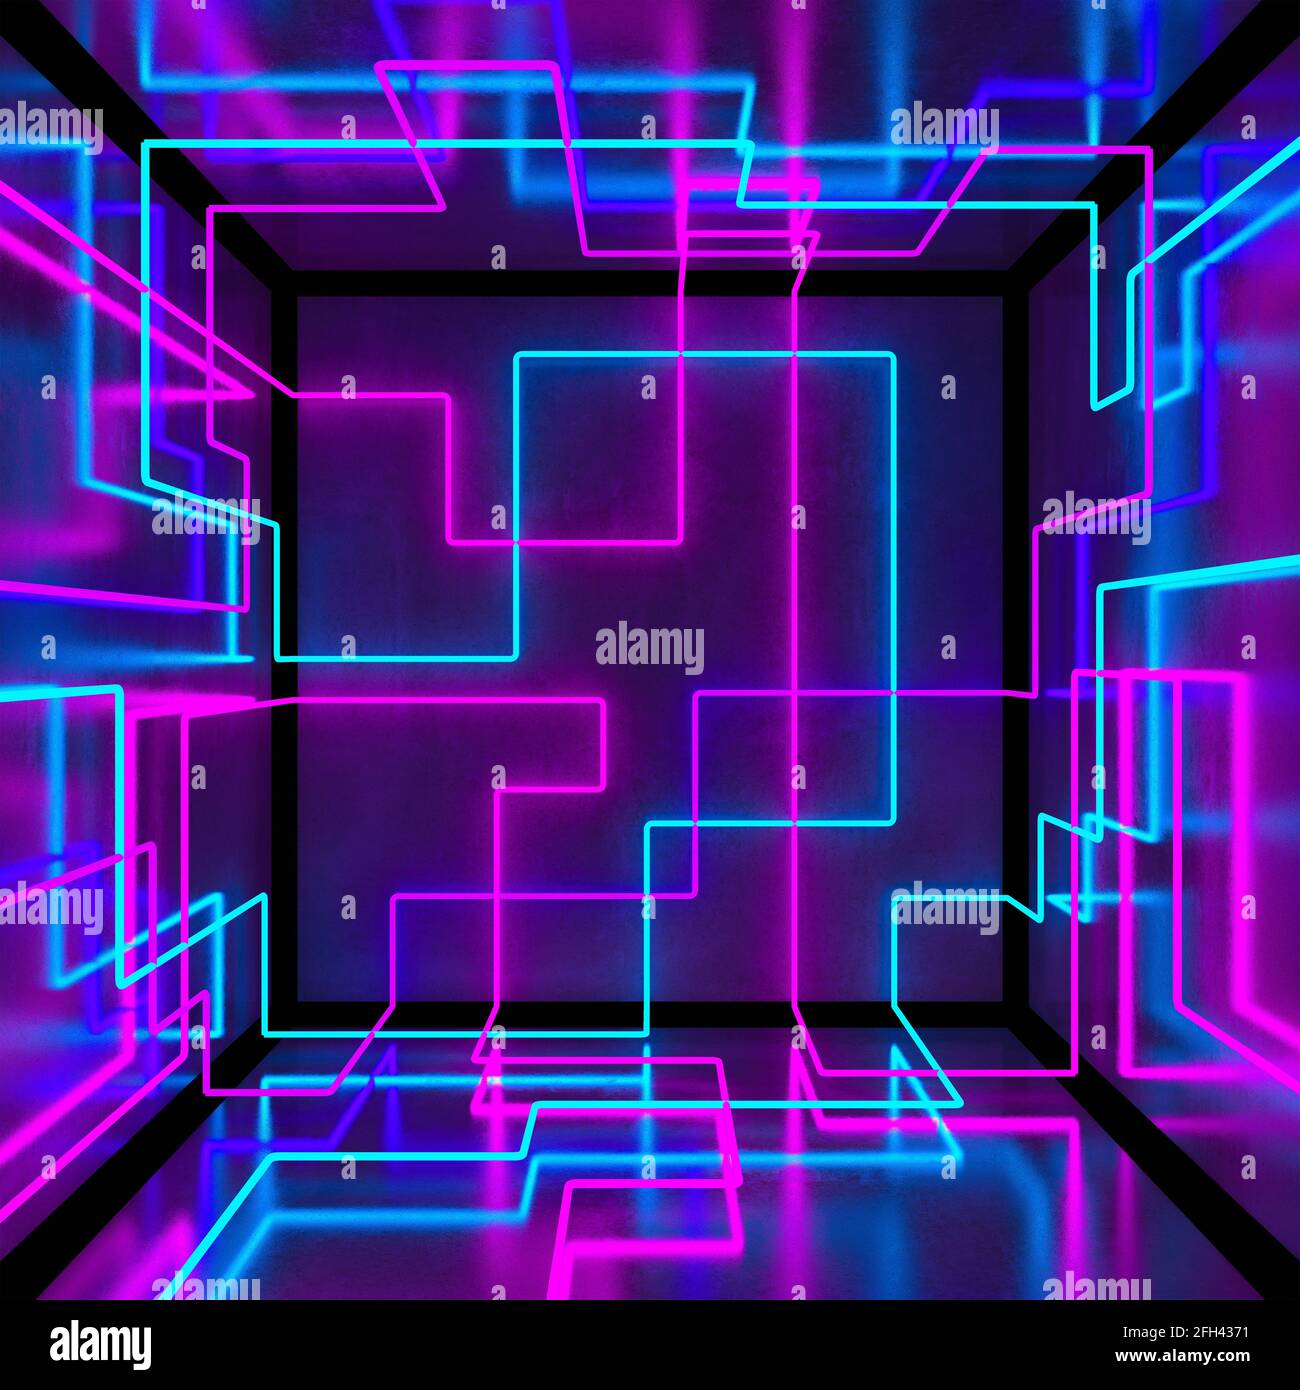 Abstrakt 3d Neon Cube box Hintergrund. Dunkler Raum mit Betonwand, LED-Linien.  3d-Illustration Stockfotografie - Alamy